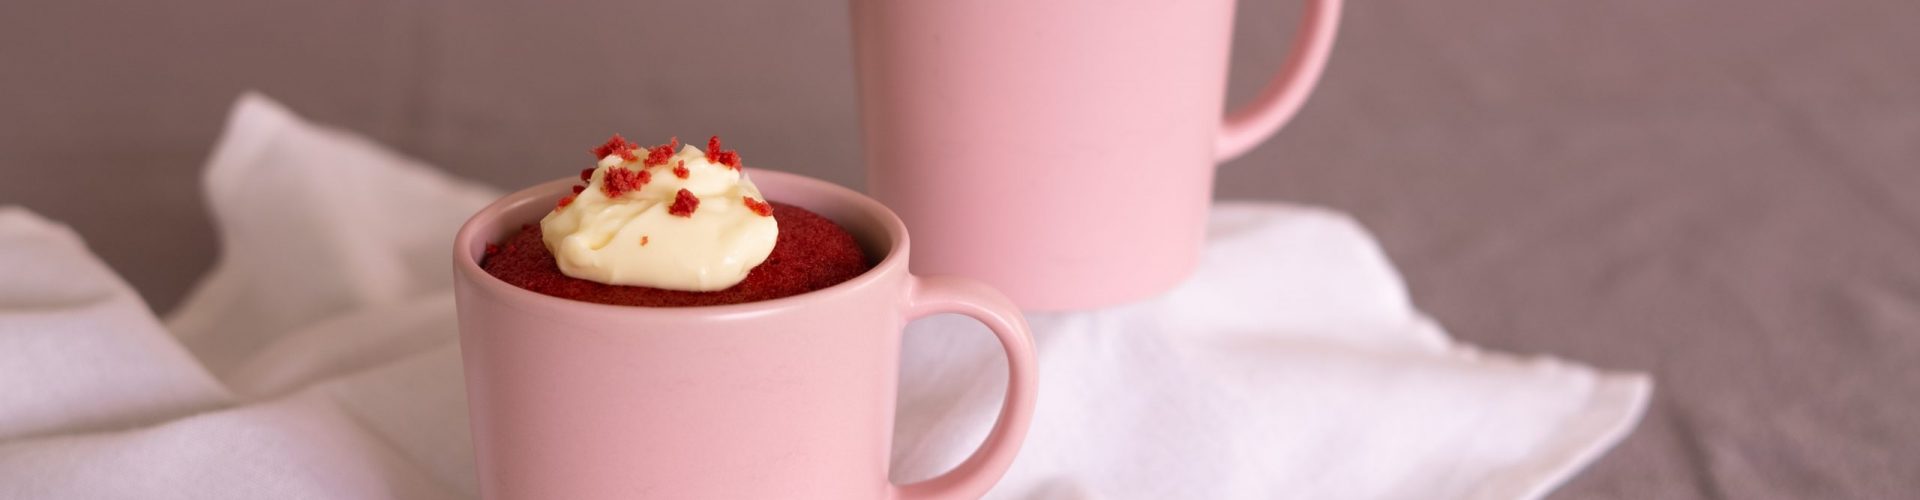 Toplay Red Velvet Mug Cake